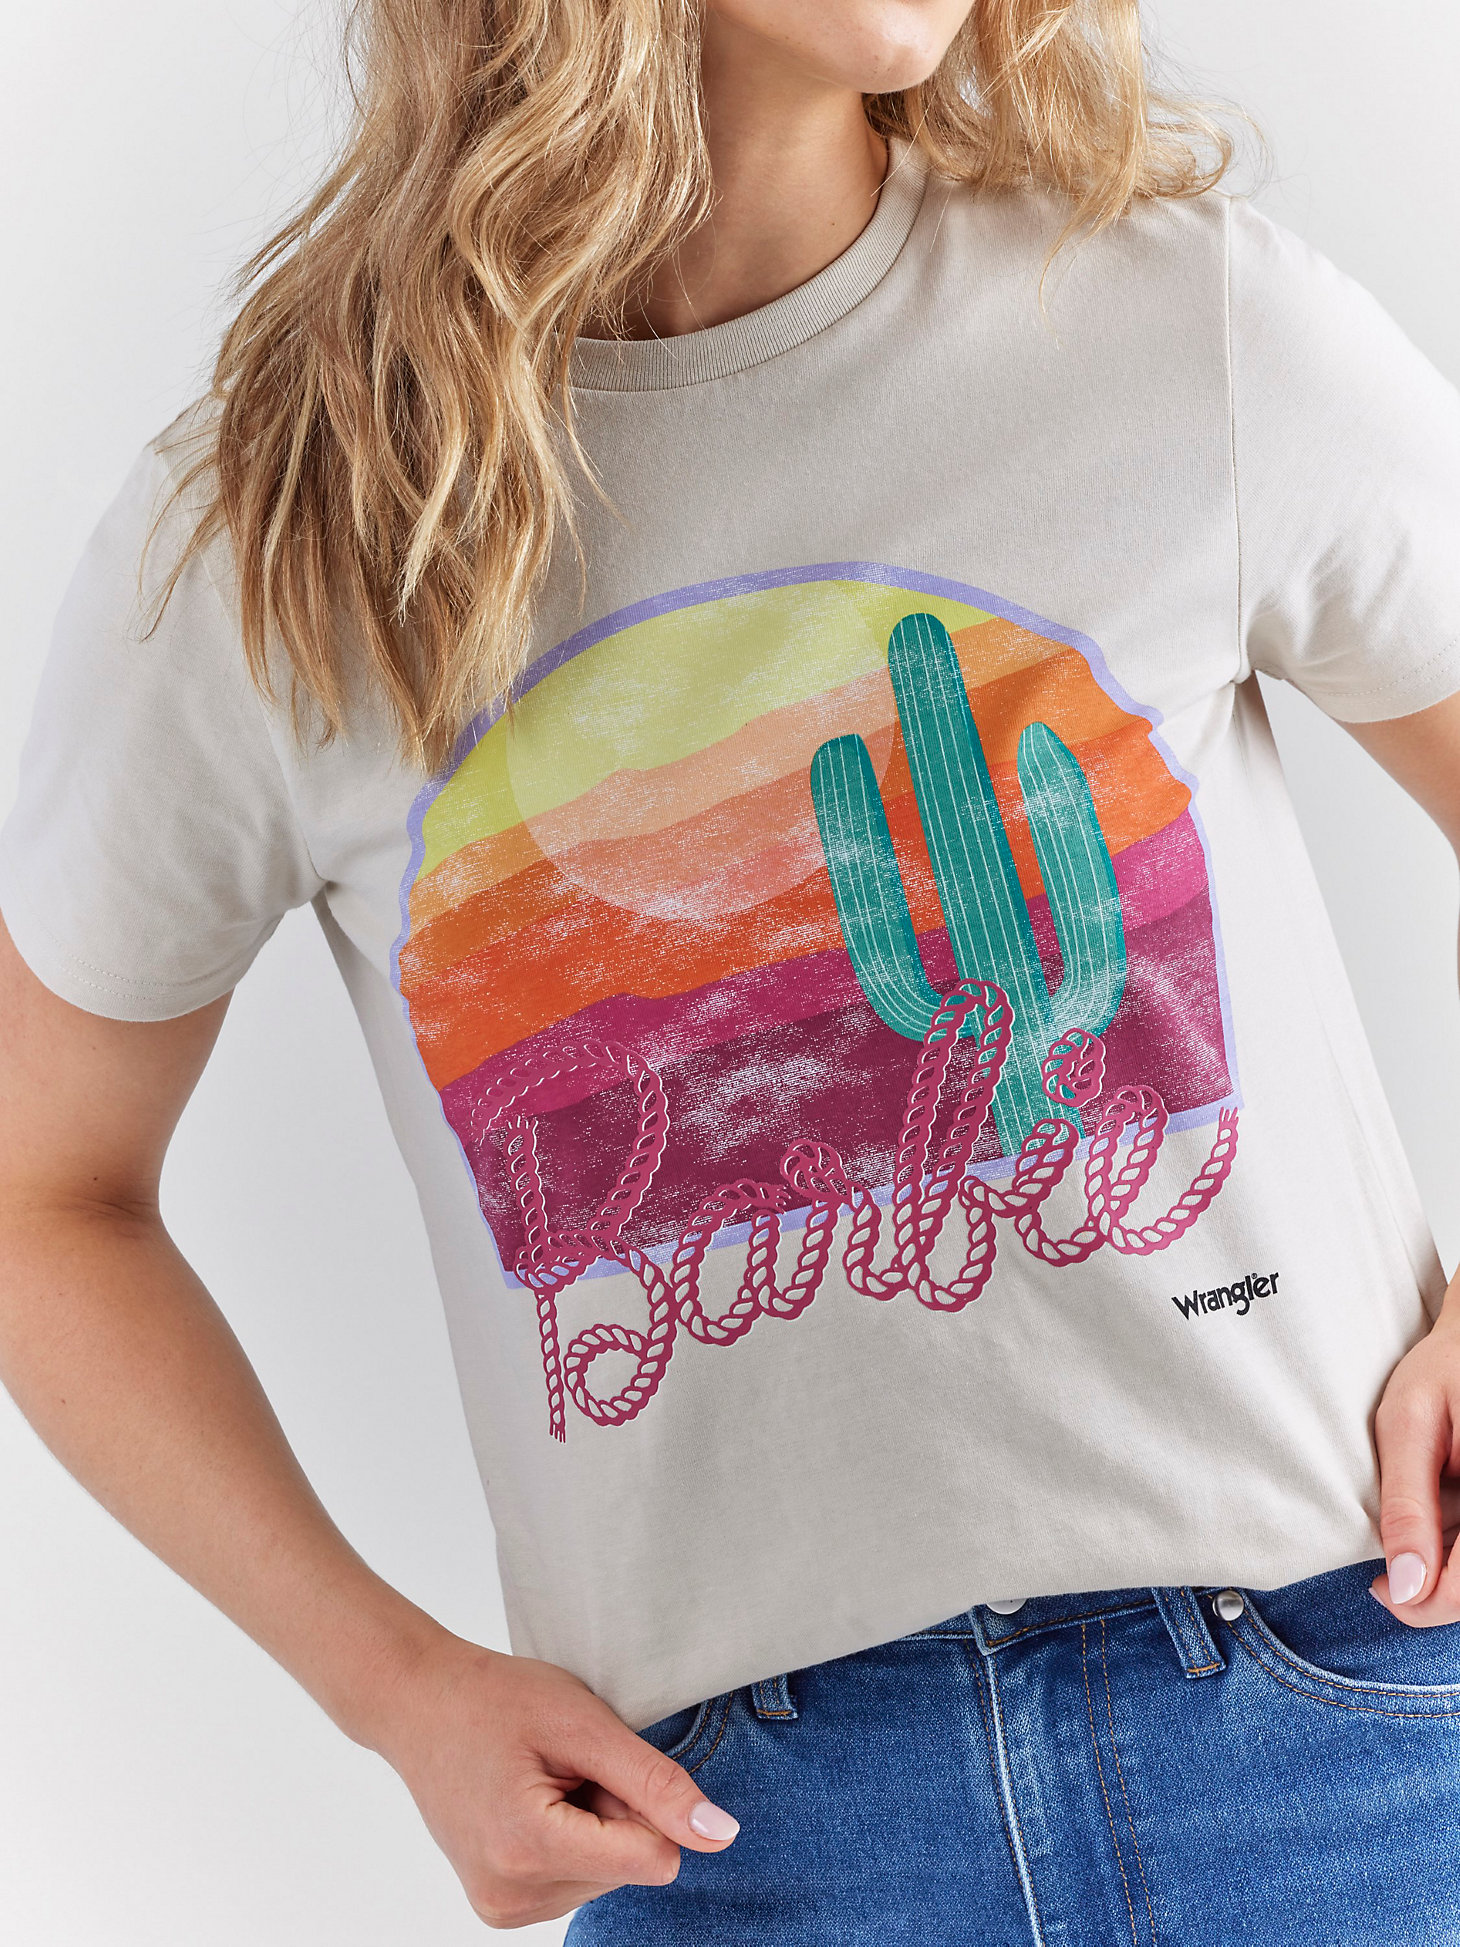 Barbie x Wrangler desert t-shirt